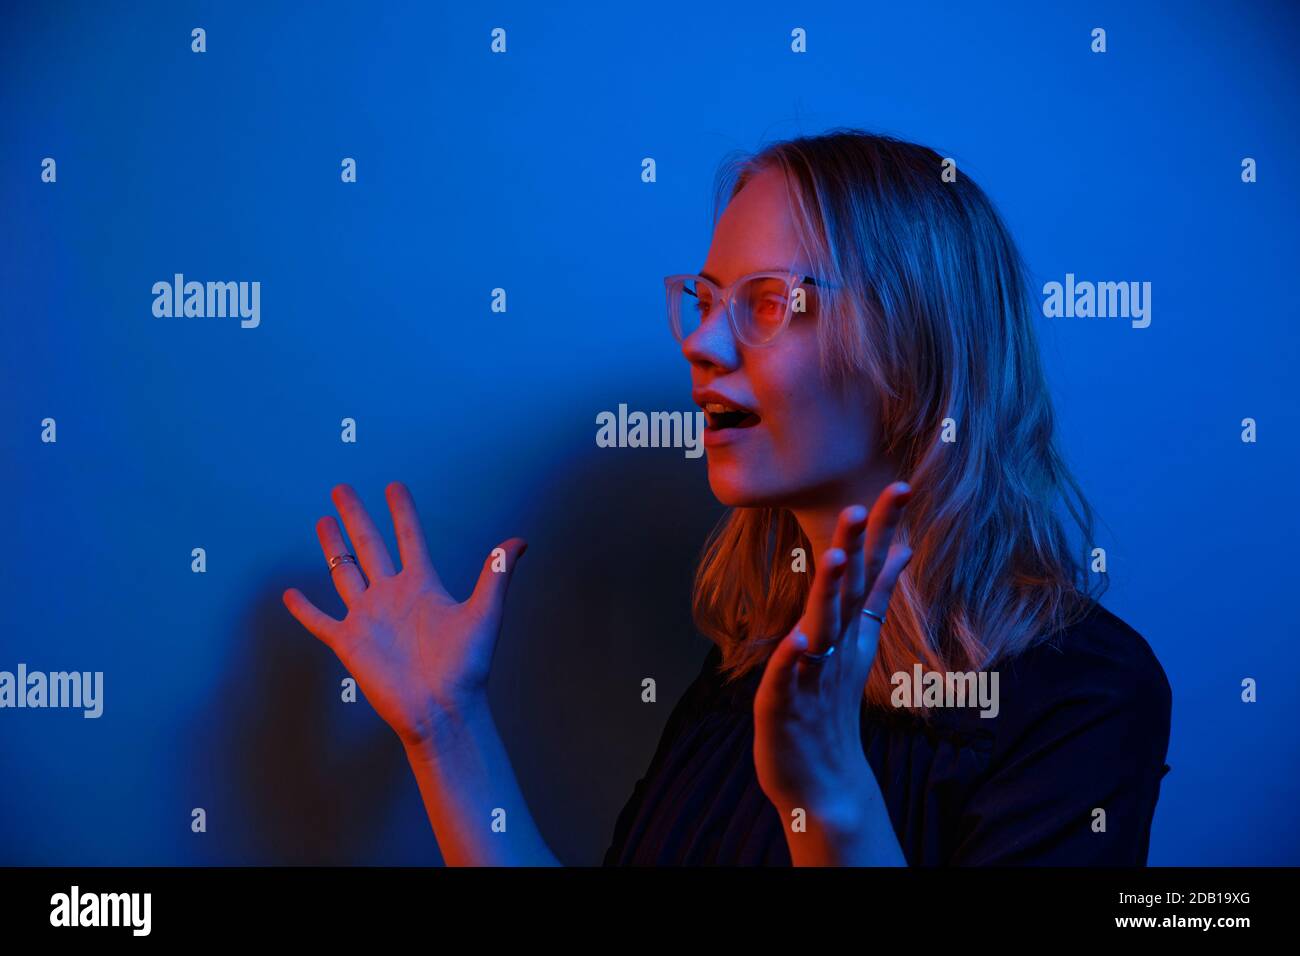 Ein junges kaukasisches Mädchen in Brille sieht auf einem dunkelblauen Neon-Hintergrund überraschend zur Seite. Menschliche Emotion Konzept und Raum kopieren. Stockfoto